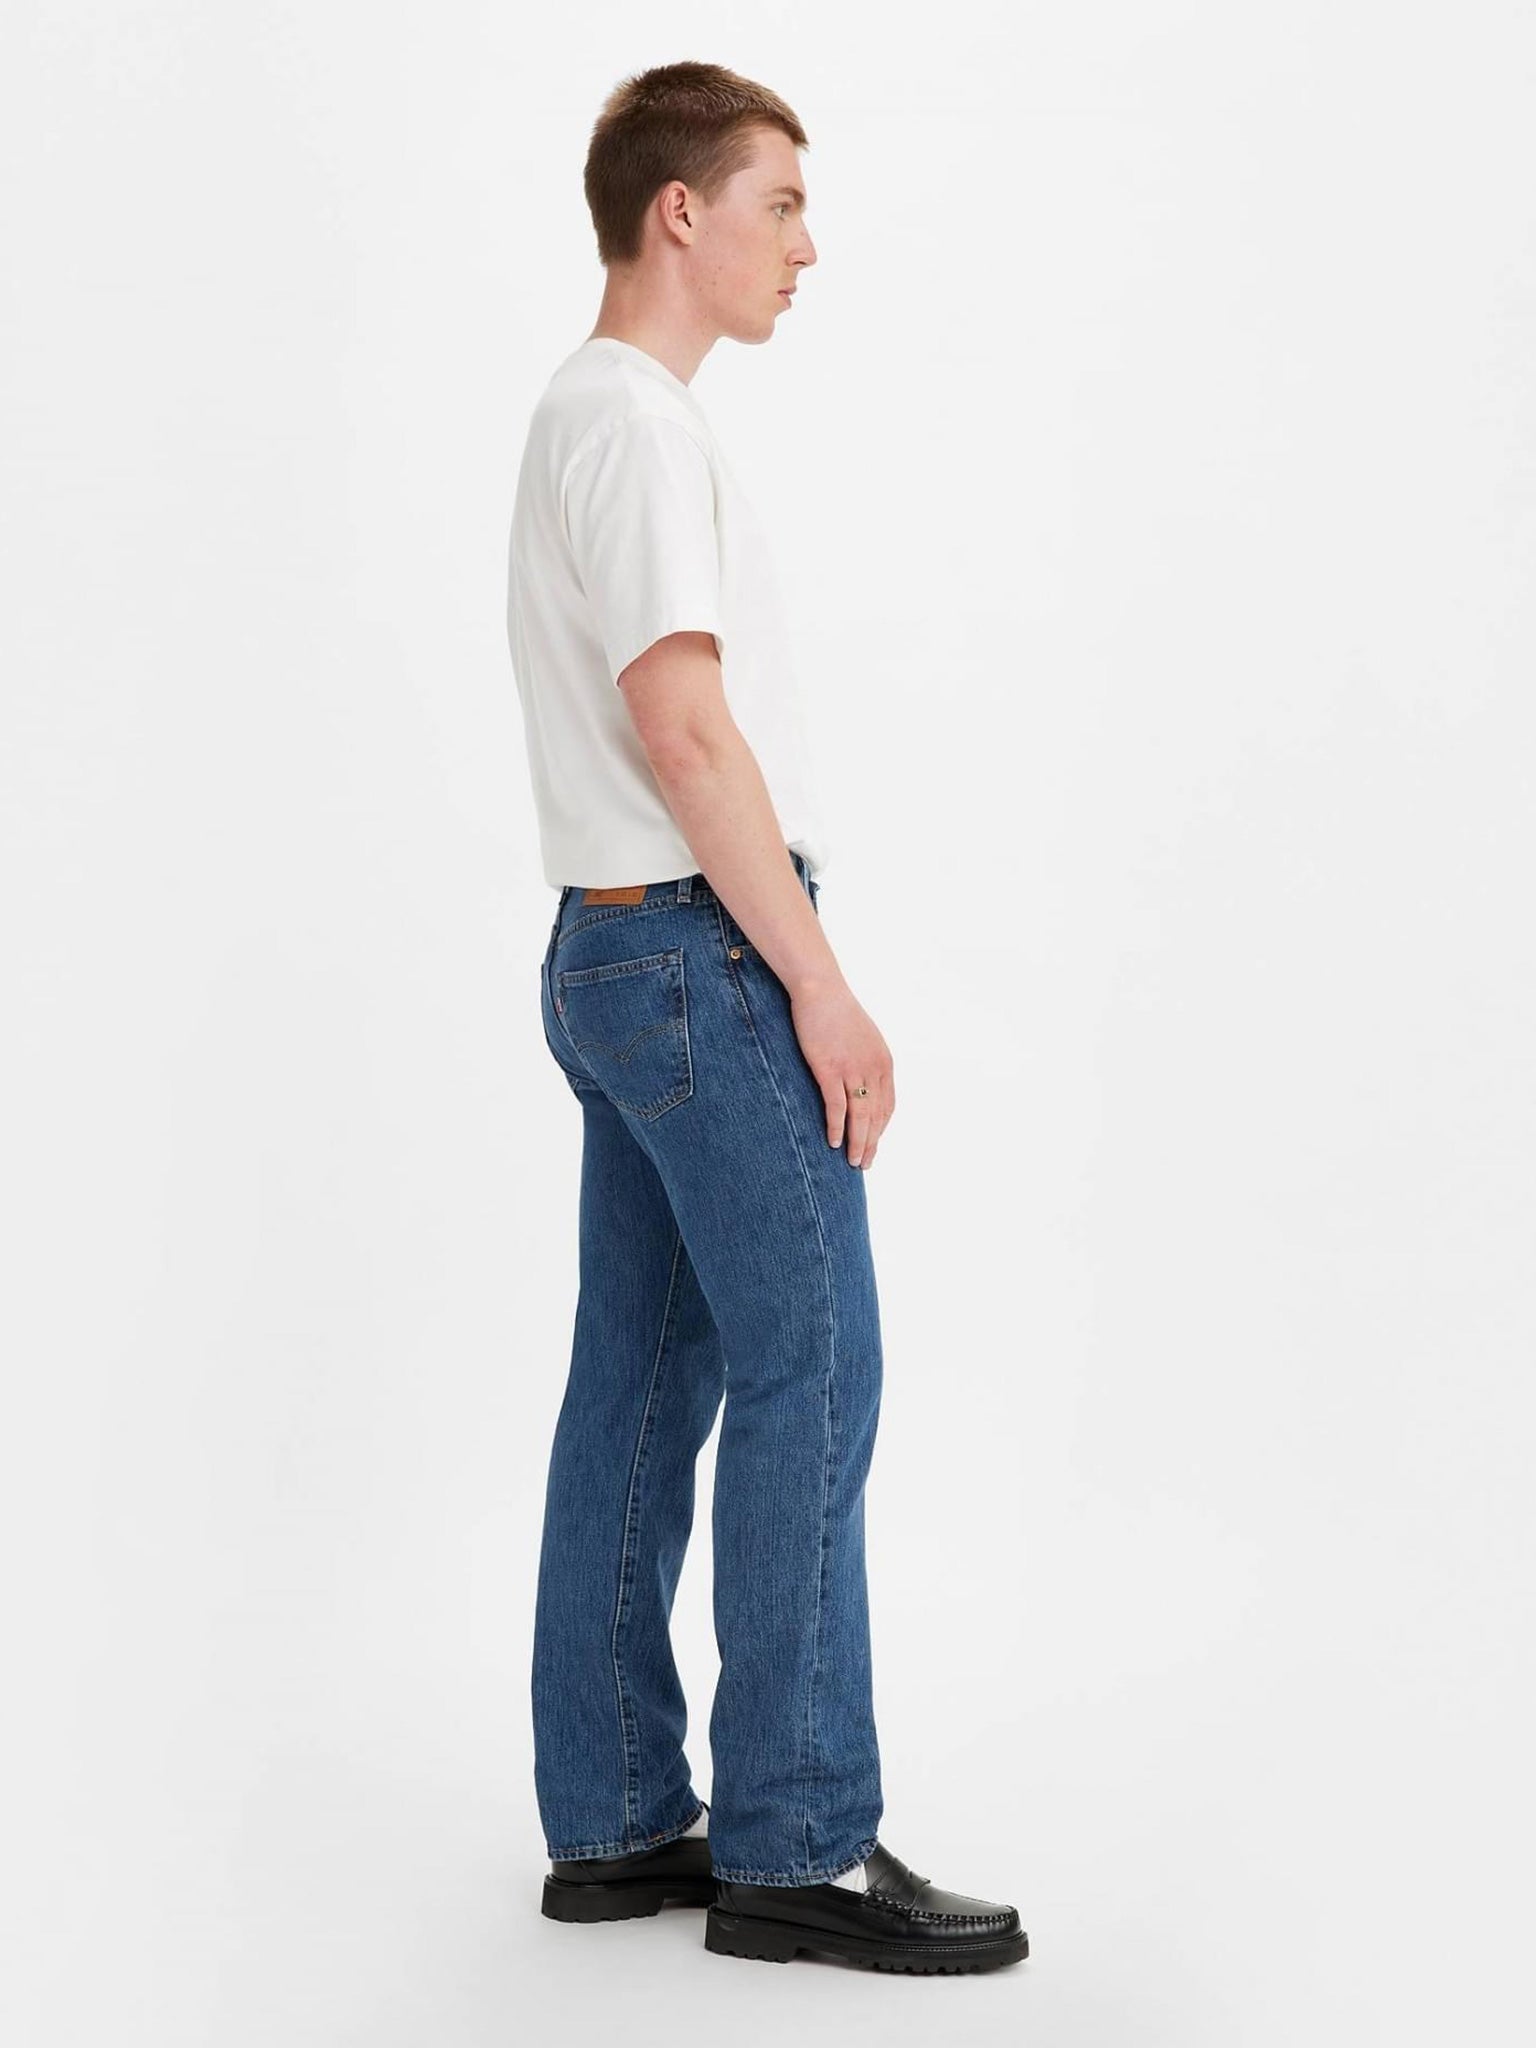 Ανδρικό παντελόνι τζιν 501® Levi's® Original Jeans 005010114 | 005010114